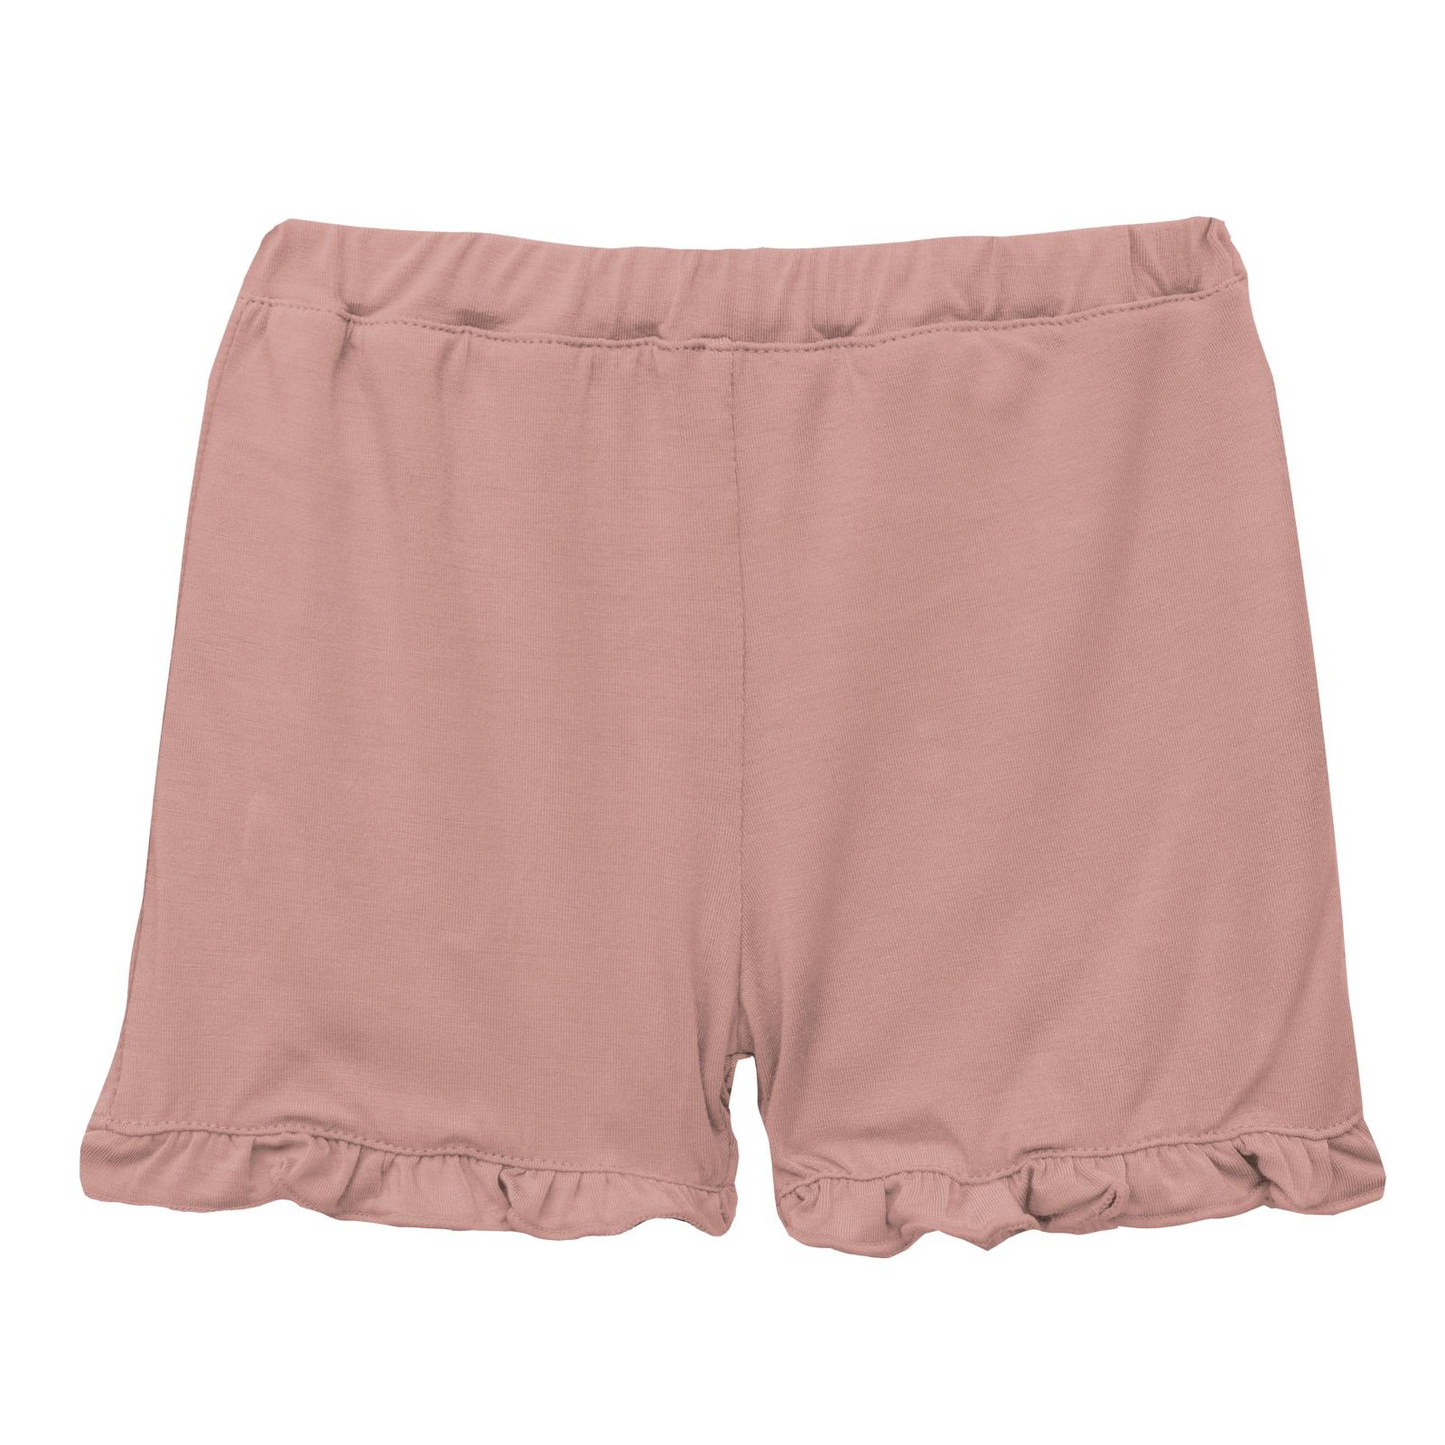 kickee-pants-ruffle-shorts-in-blush